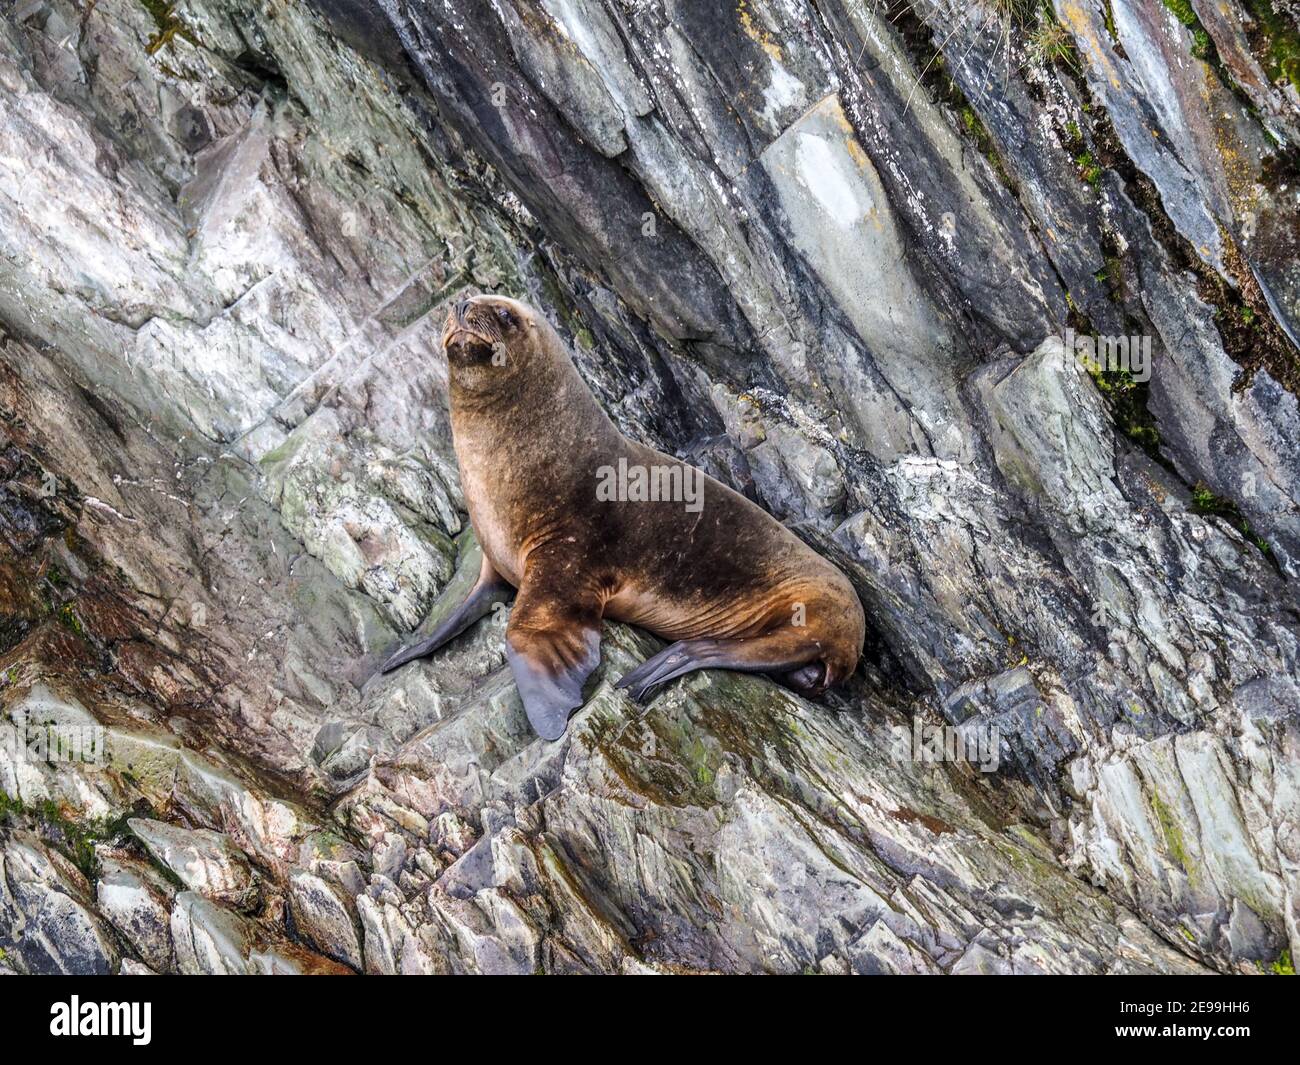 Fur seal on rocky island in the Région de Magallanes y de la Antártica Chilena, Patagonia, Chile Stock Photo